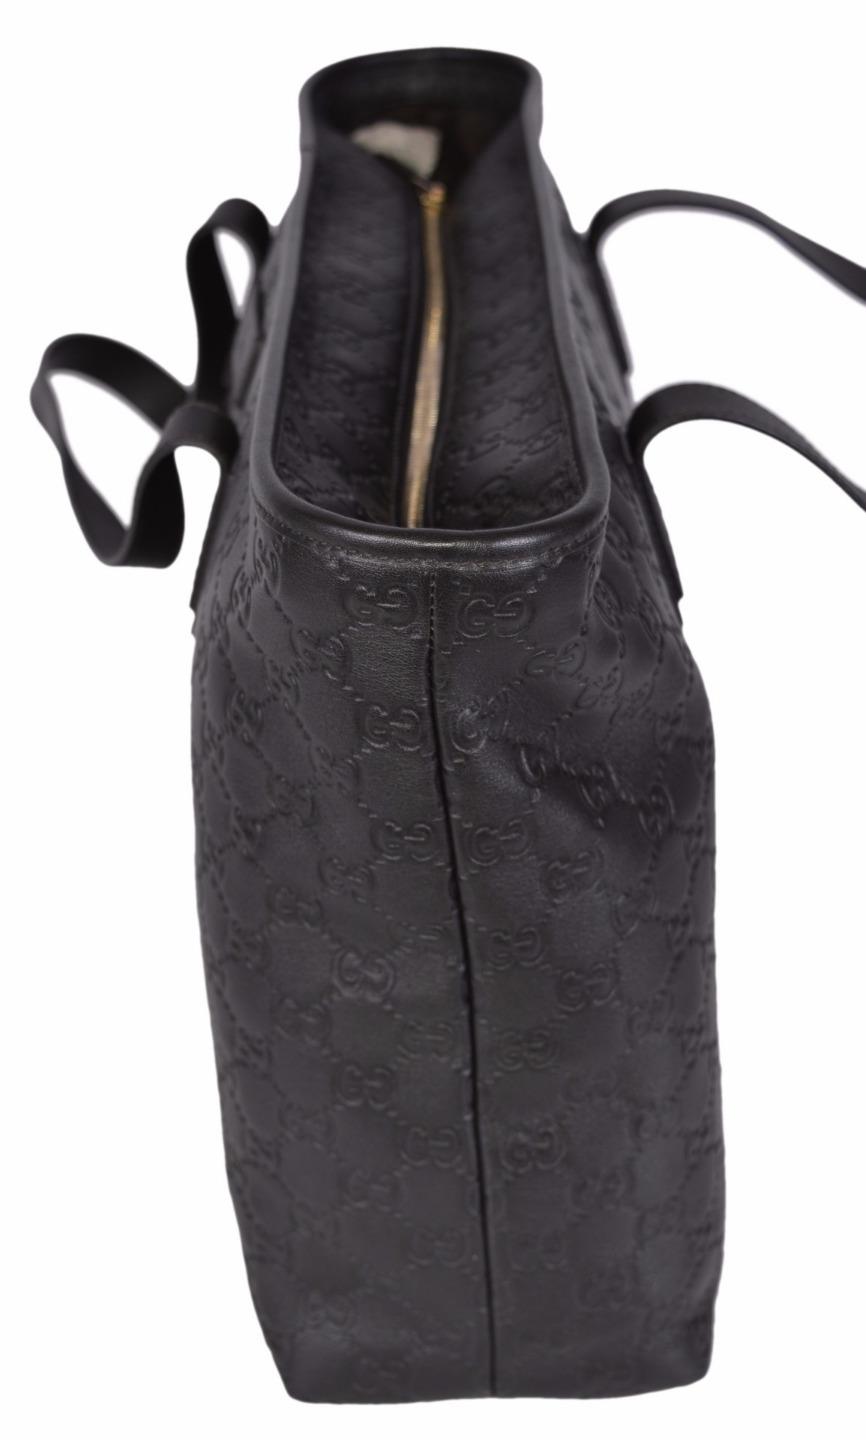 NEW Gucci 211137 Brown Leather GG Guccissima Zip Top Handbag Purse Tote | eBay